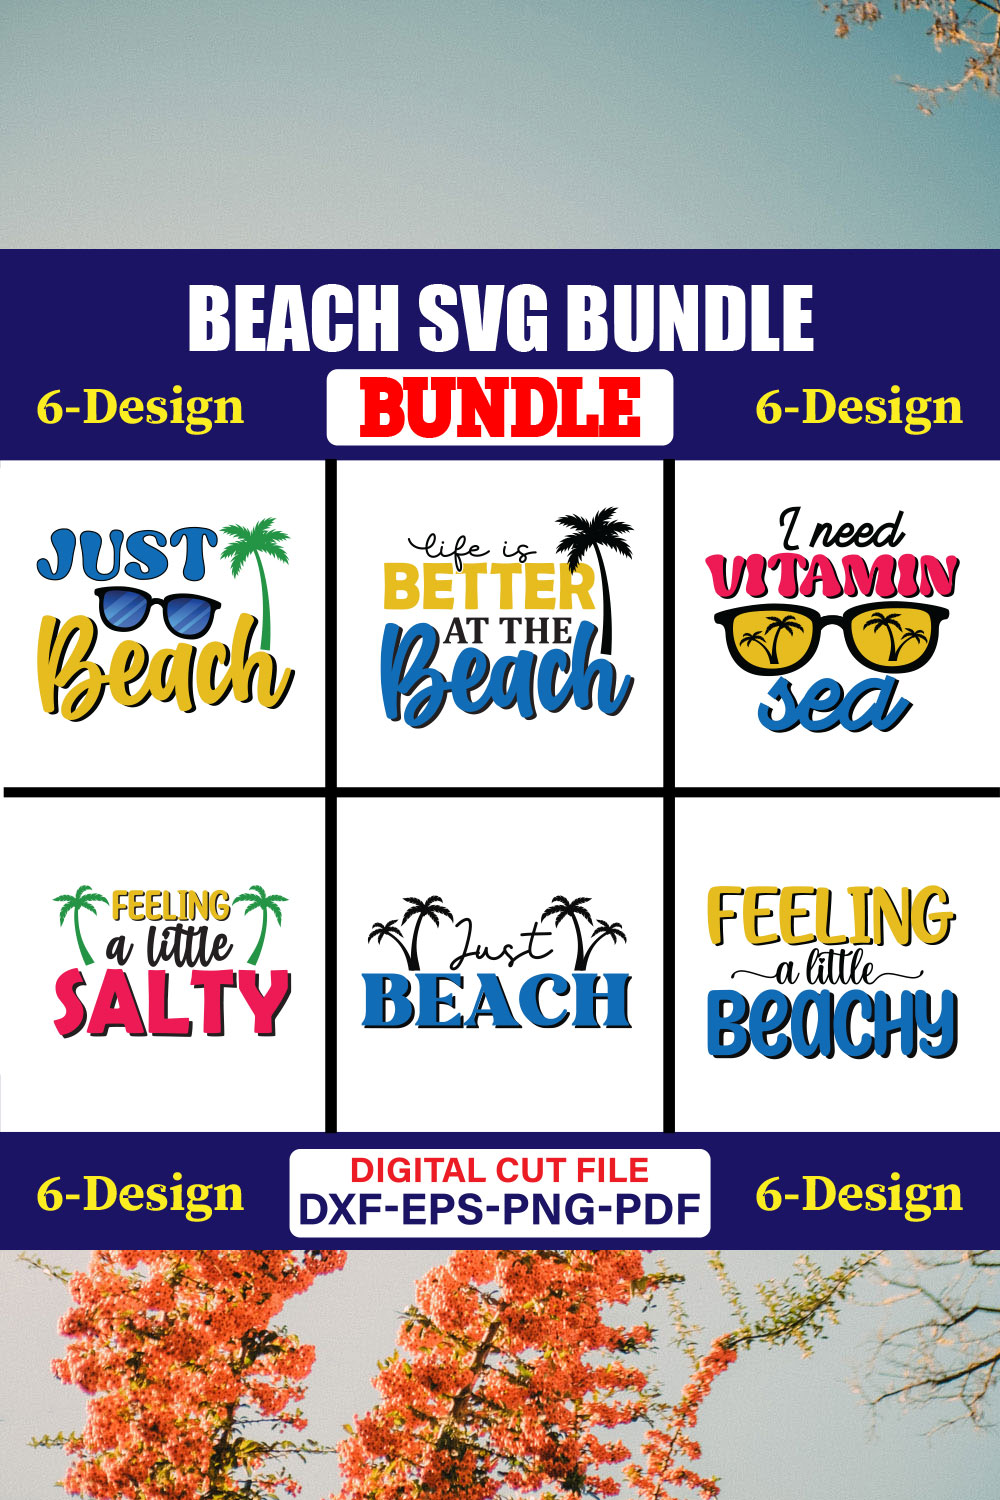 Beach SVG T-shirt Design Bundle Vol-02 pinterest preview image.